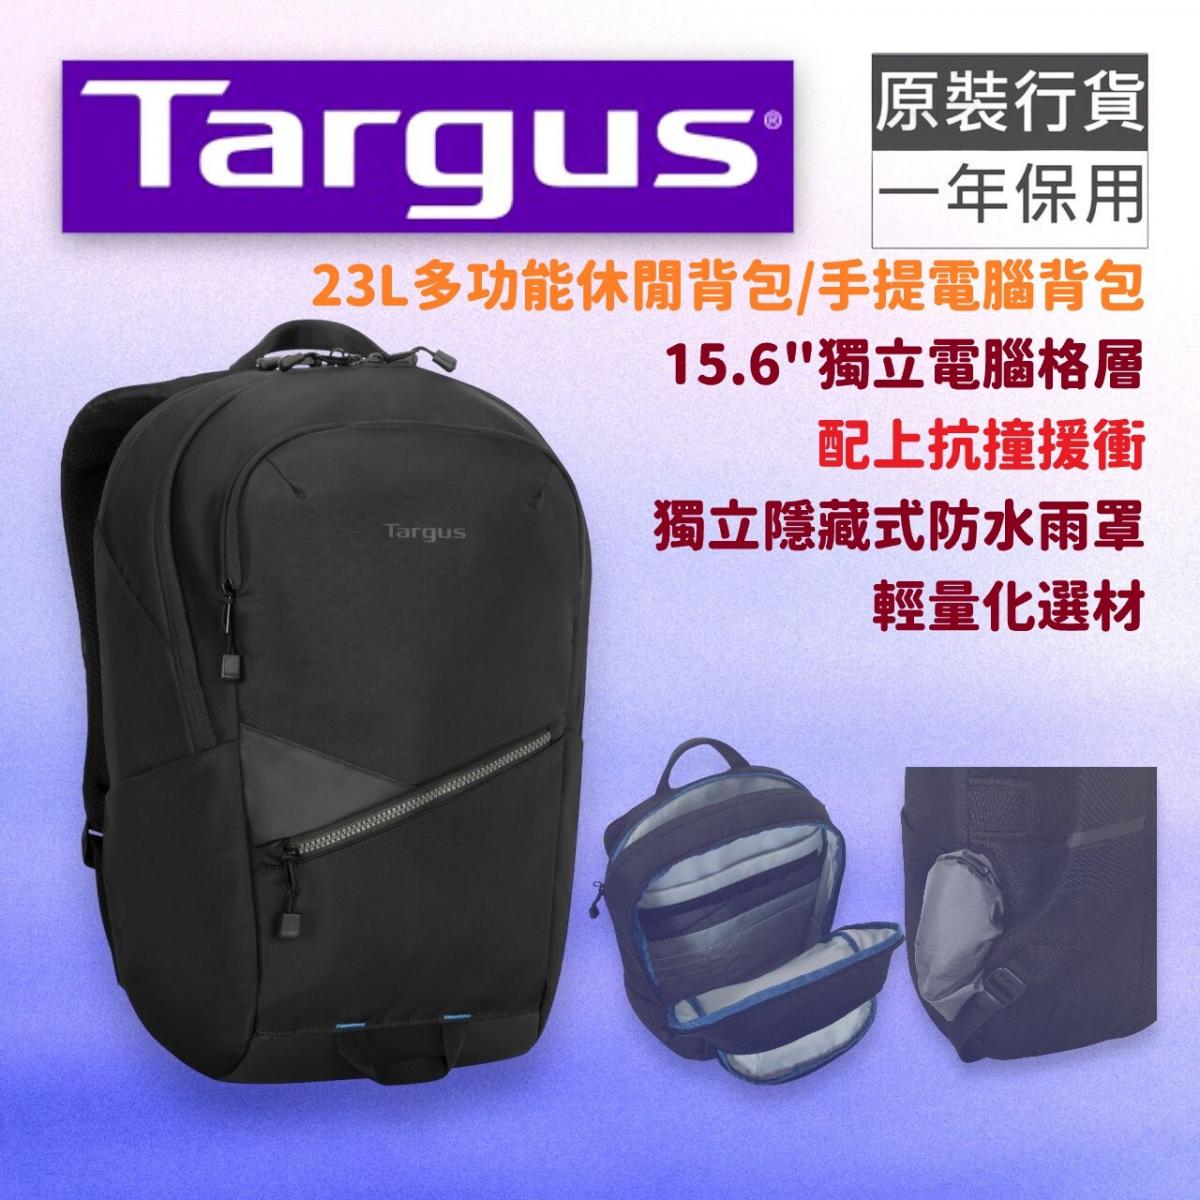 Transpire™ 15.6" 23L多功能休閒背包/手提電腦背包 (黑色) (TBB633)